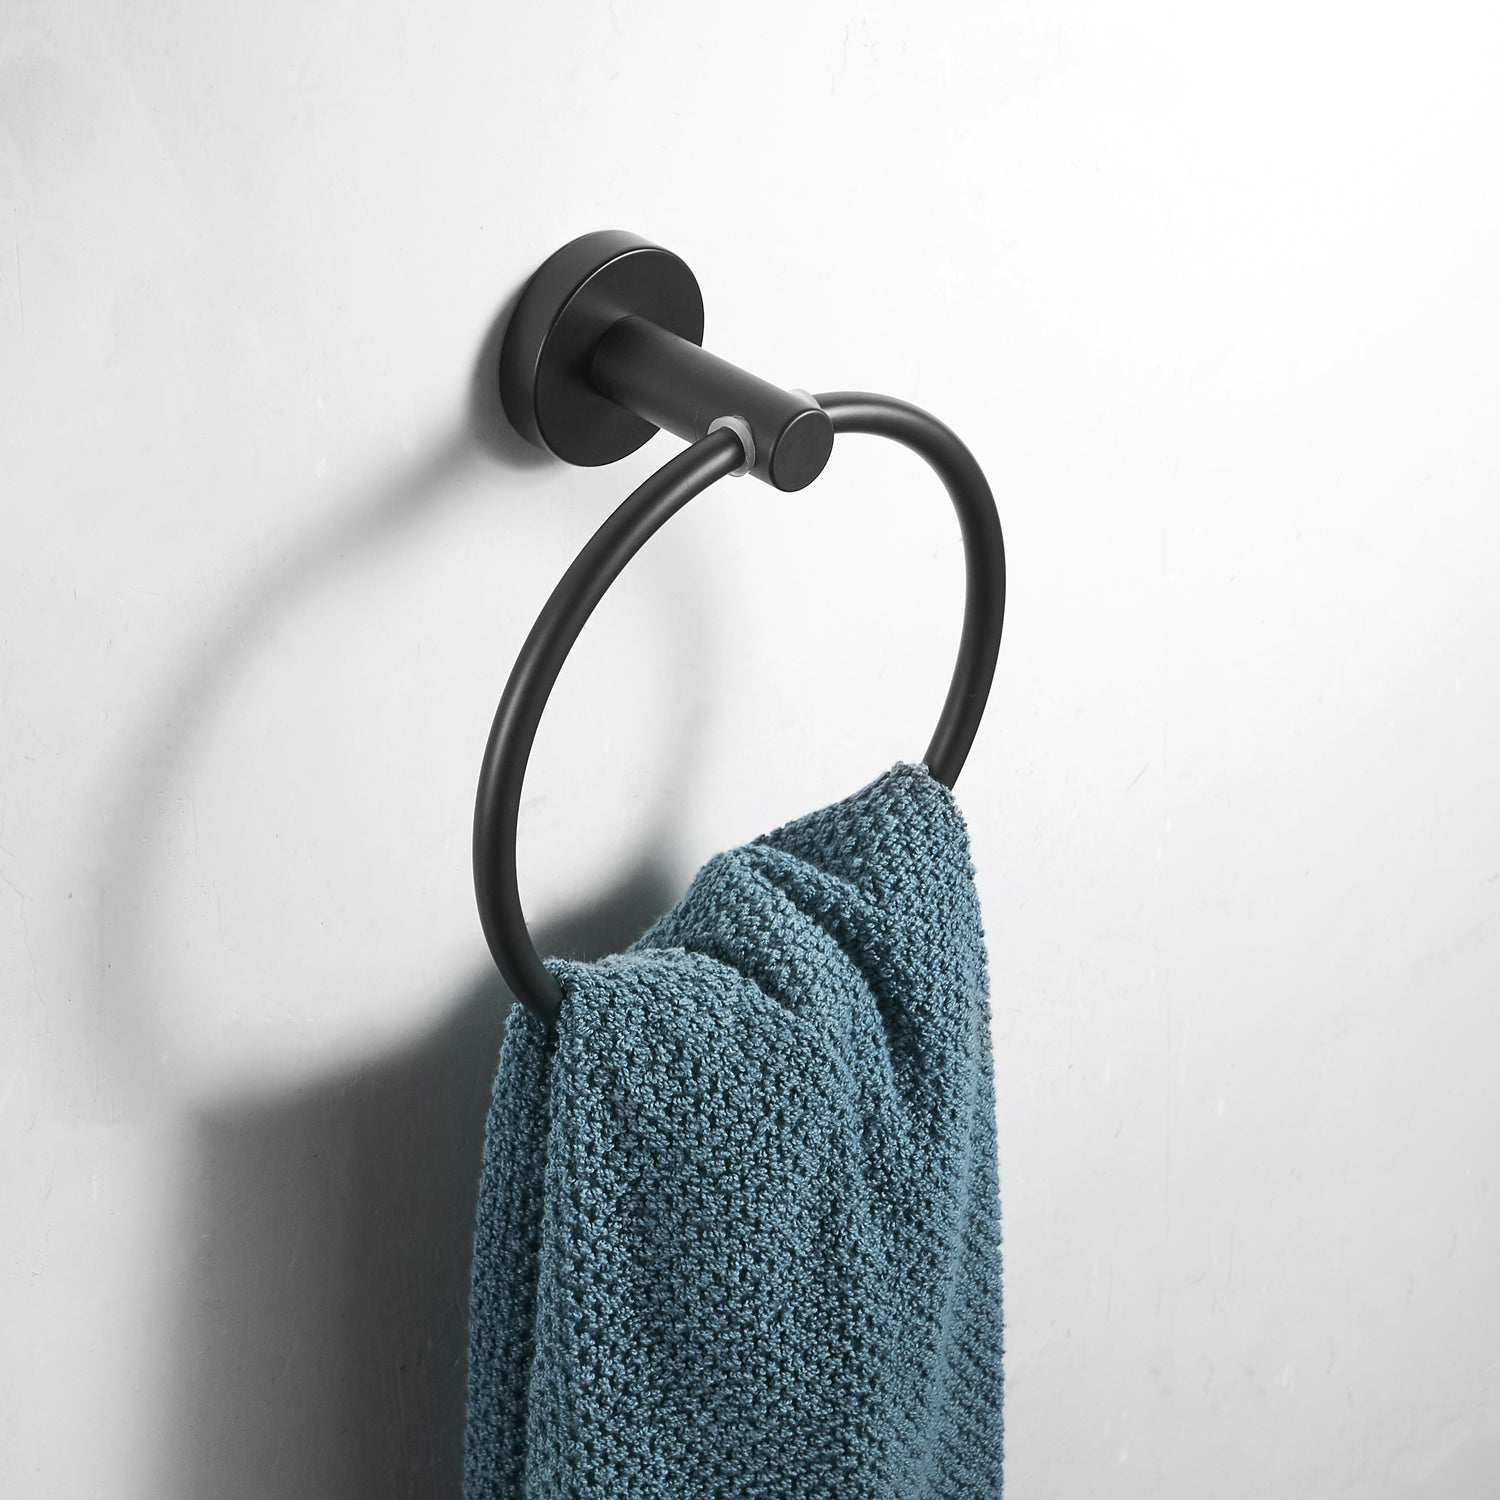 Modern Bathroom Black Hardware Set | 304 Stainless Steel Towel Rack Paper Towel Holder Towel Bar Hook Bathroom Accessories - WELQUEEN